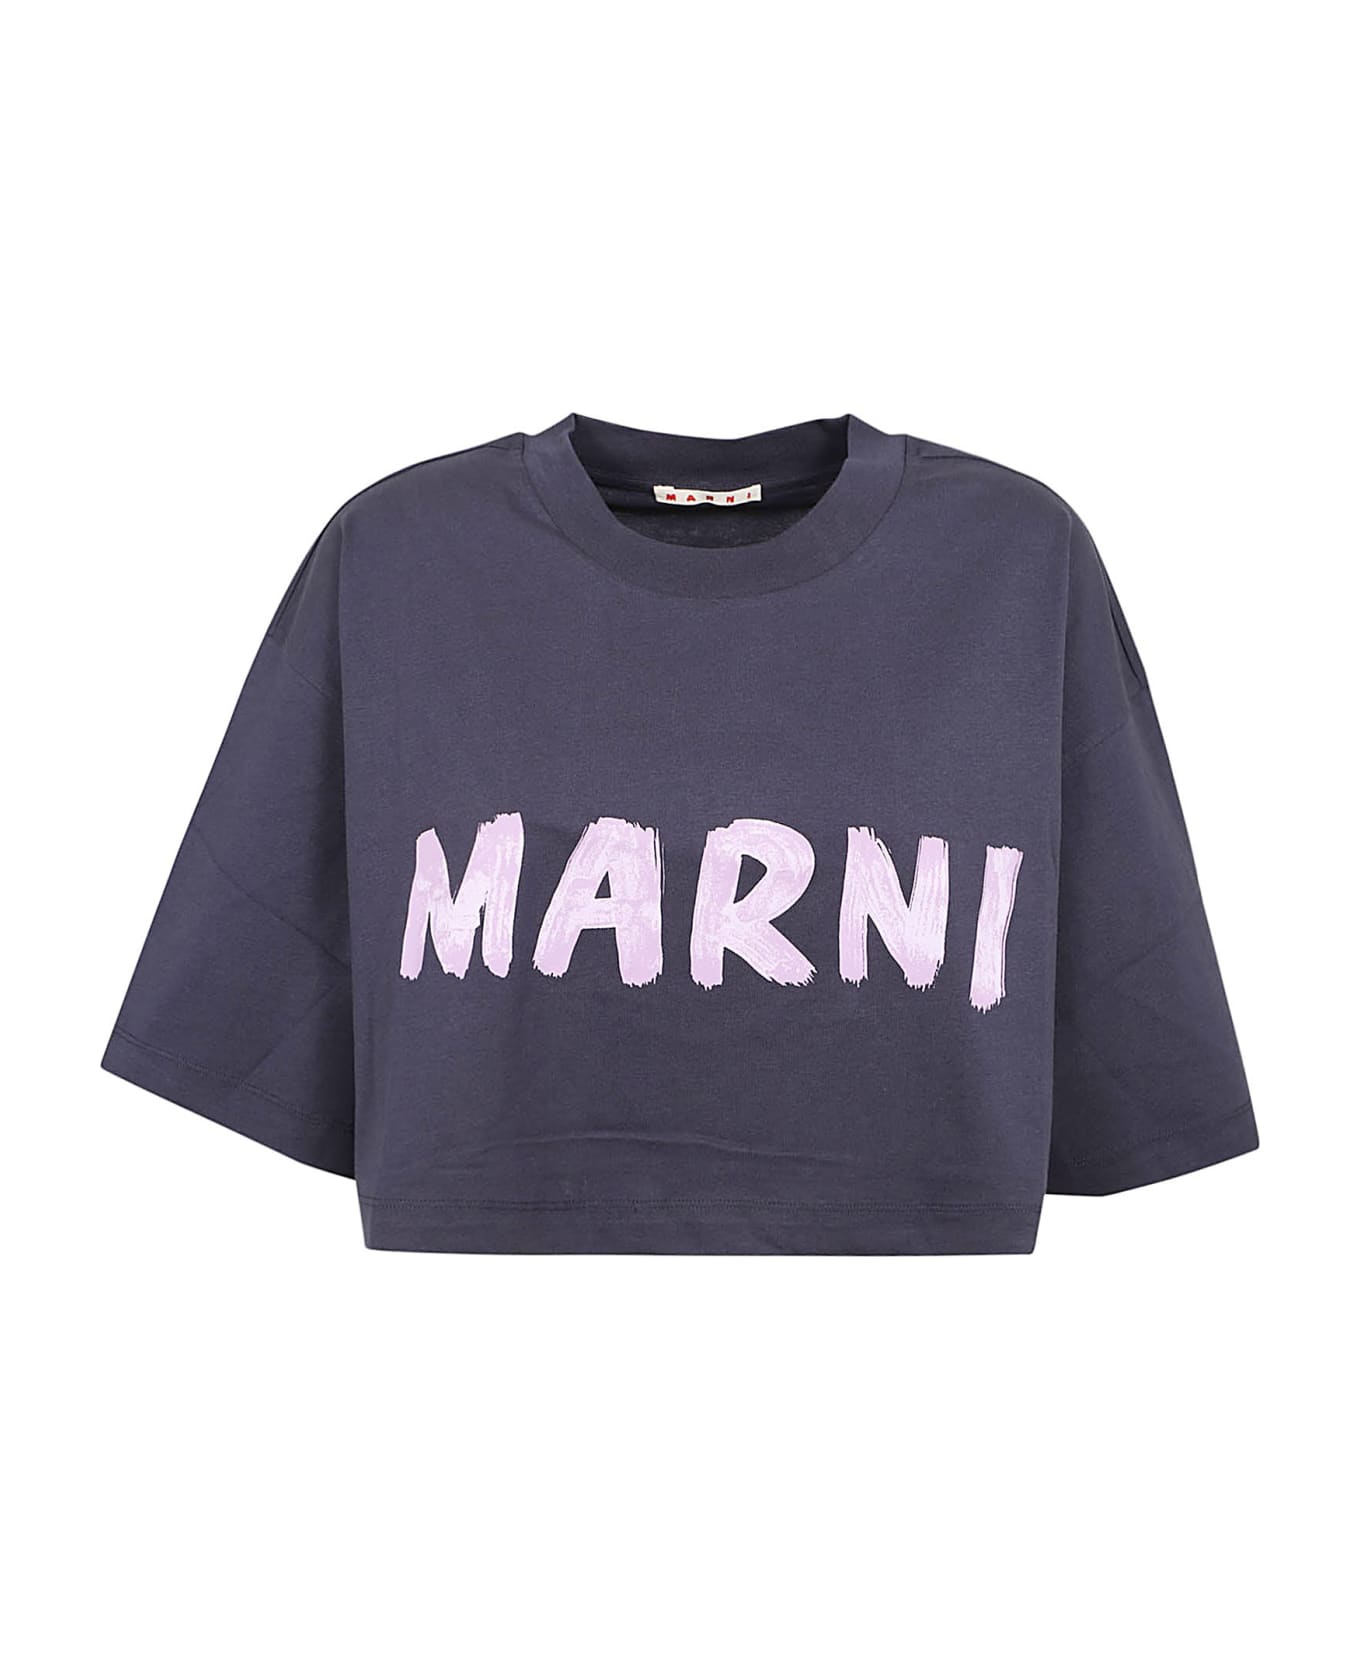 Marni T-shirt - Blublack Tシャツ